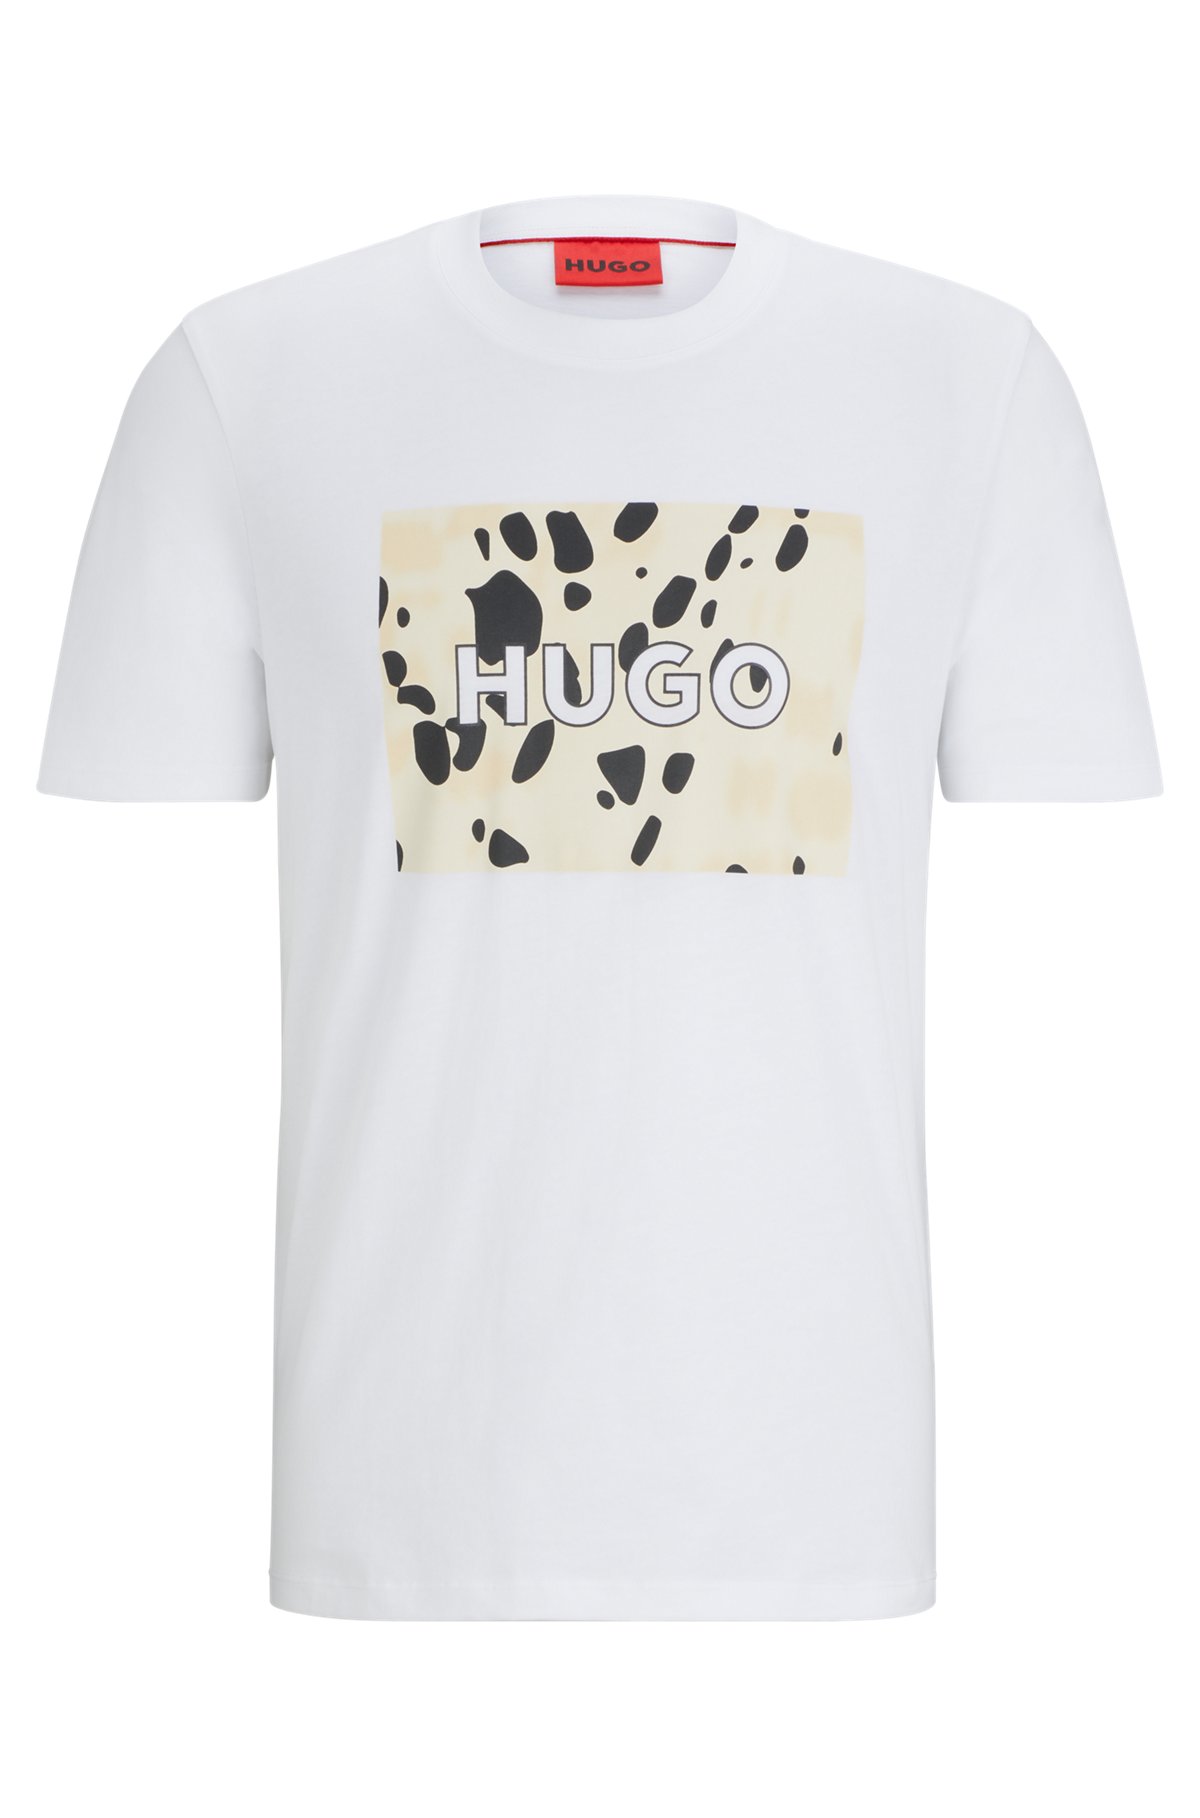 HUGO - コットンジャージー Tシャツ ダルメシアンプリント ロゴアート